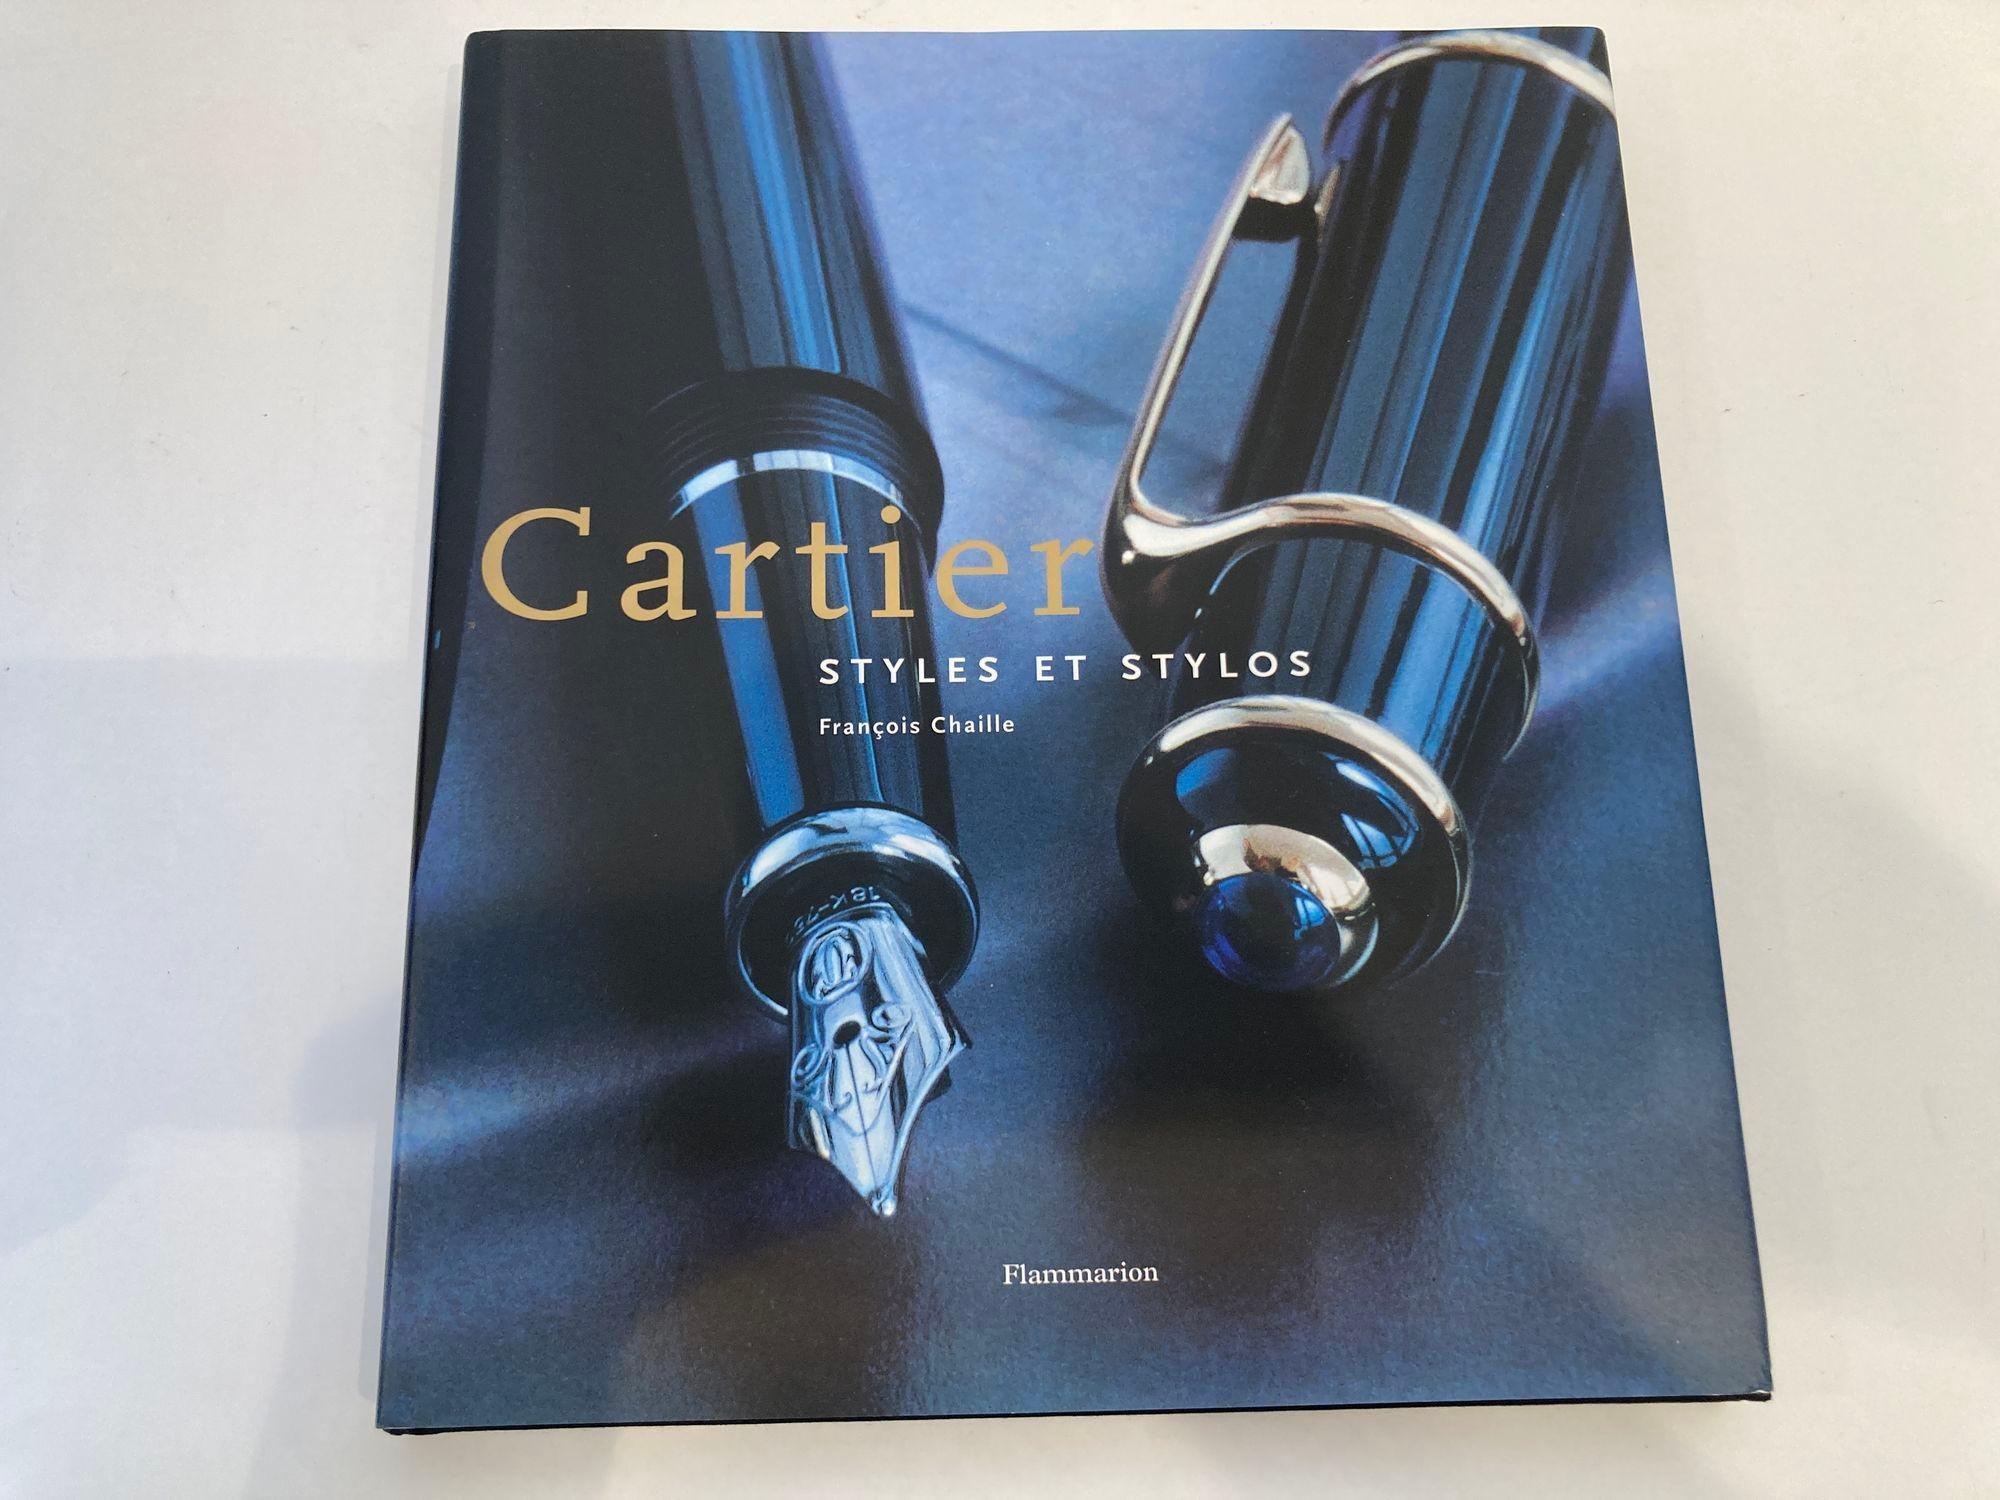 
Cartier : styles et stylos Hardcover - November 8, 2000 Französische Ausgabe 
Cartier Kreatives Schreiben von François CHAILLE


Flammarion, Paris, 2000 Veröffentlicht in französischer Sprache.
Ort der Veröffentlichung: Paris, Frankreich
Sprache  :